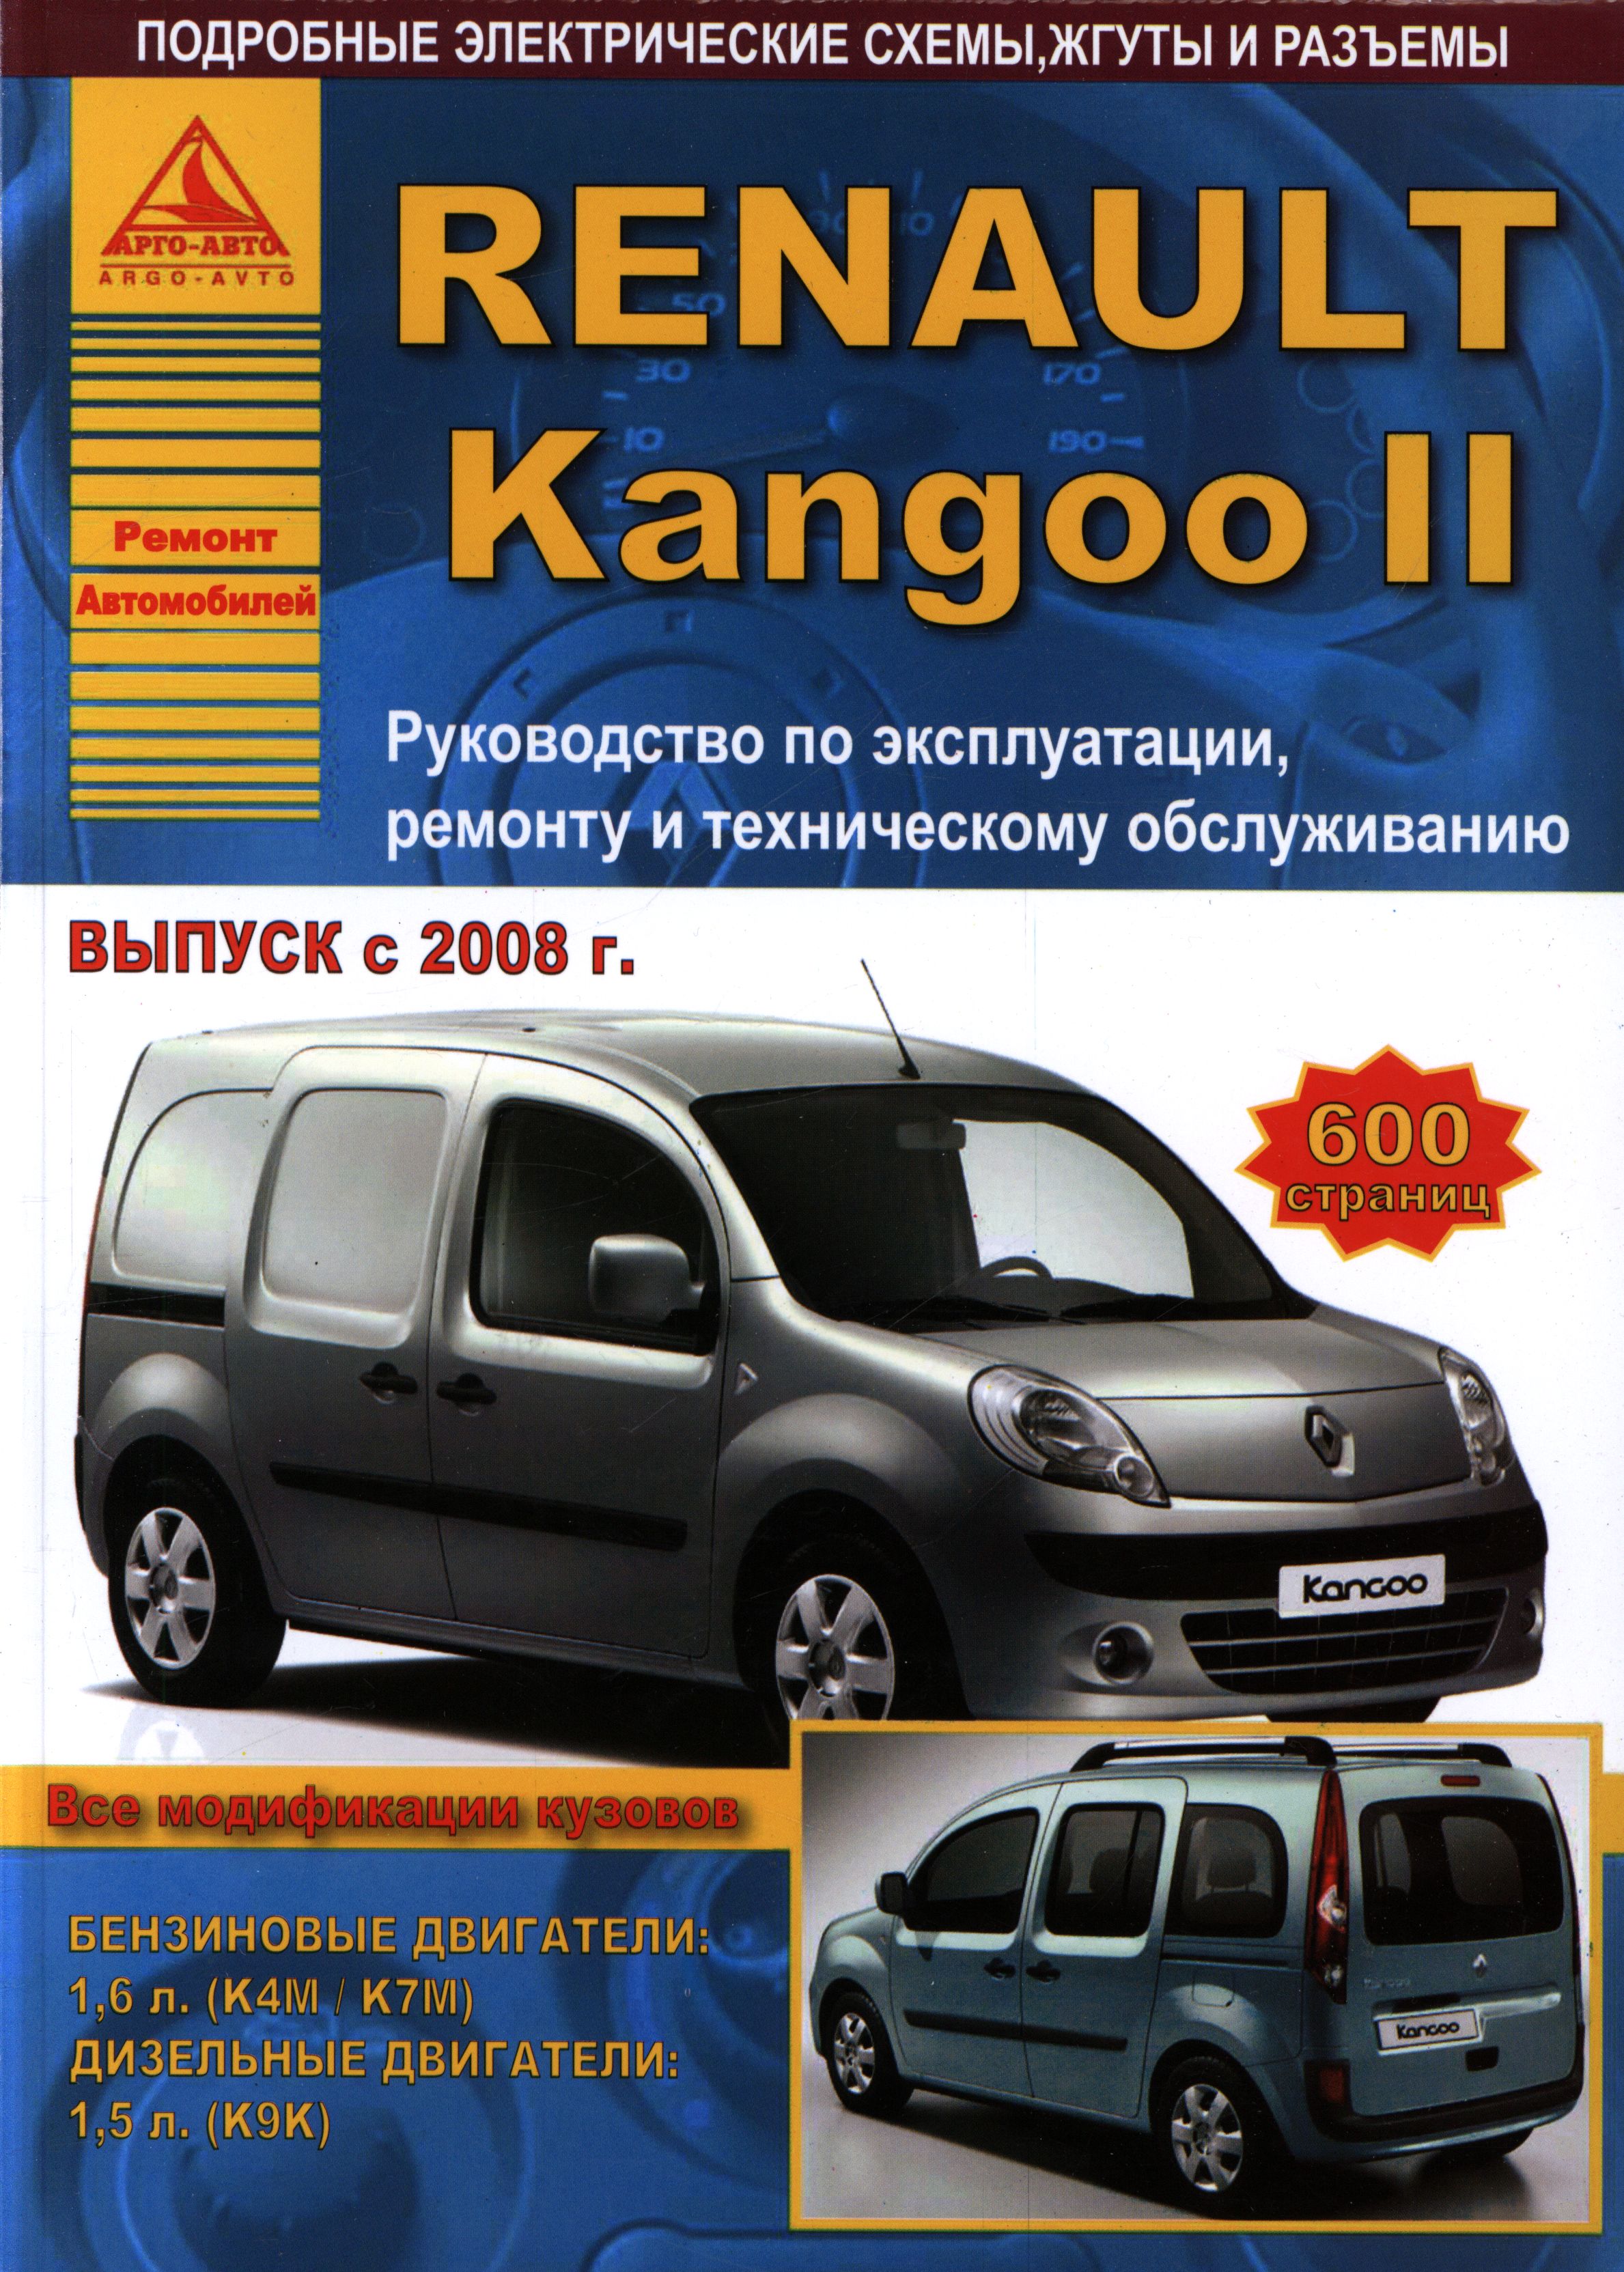 Renault Kangoo: надежный многоцелевой автомобиль